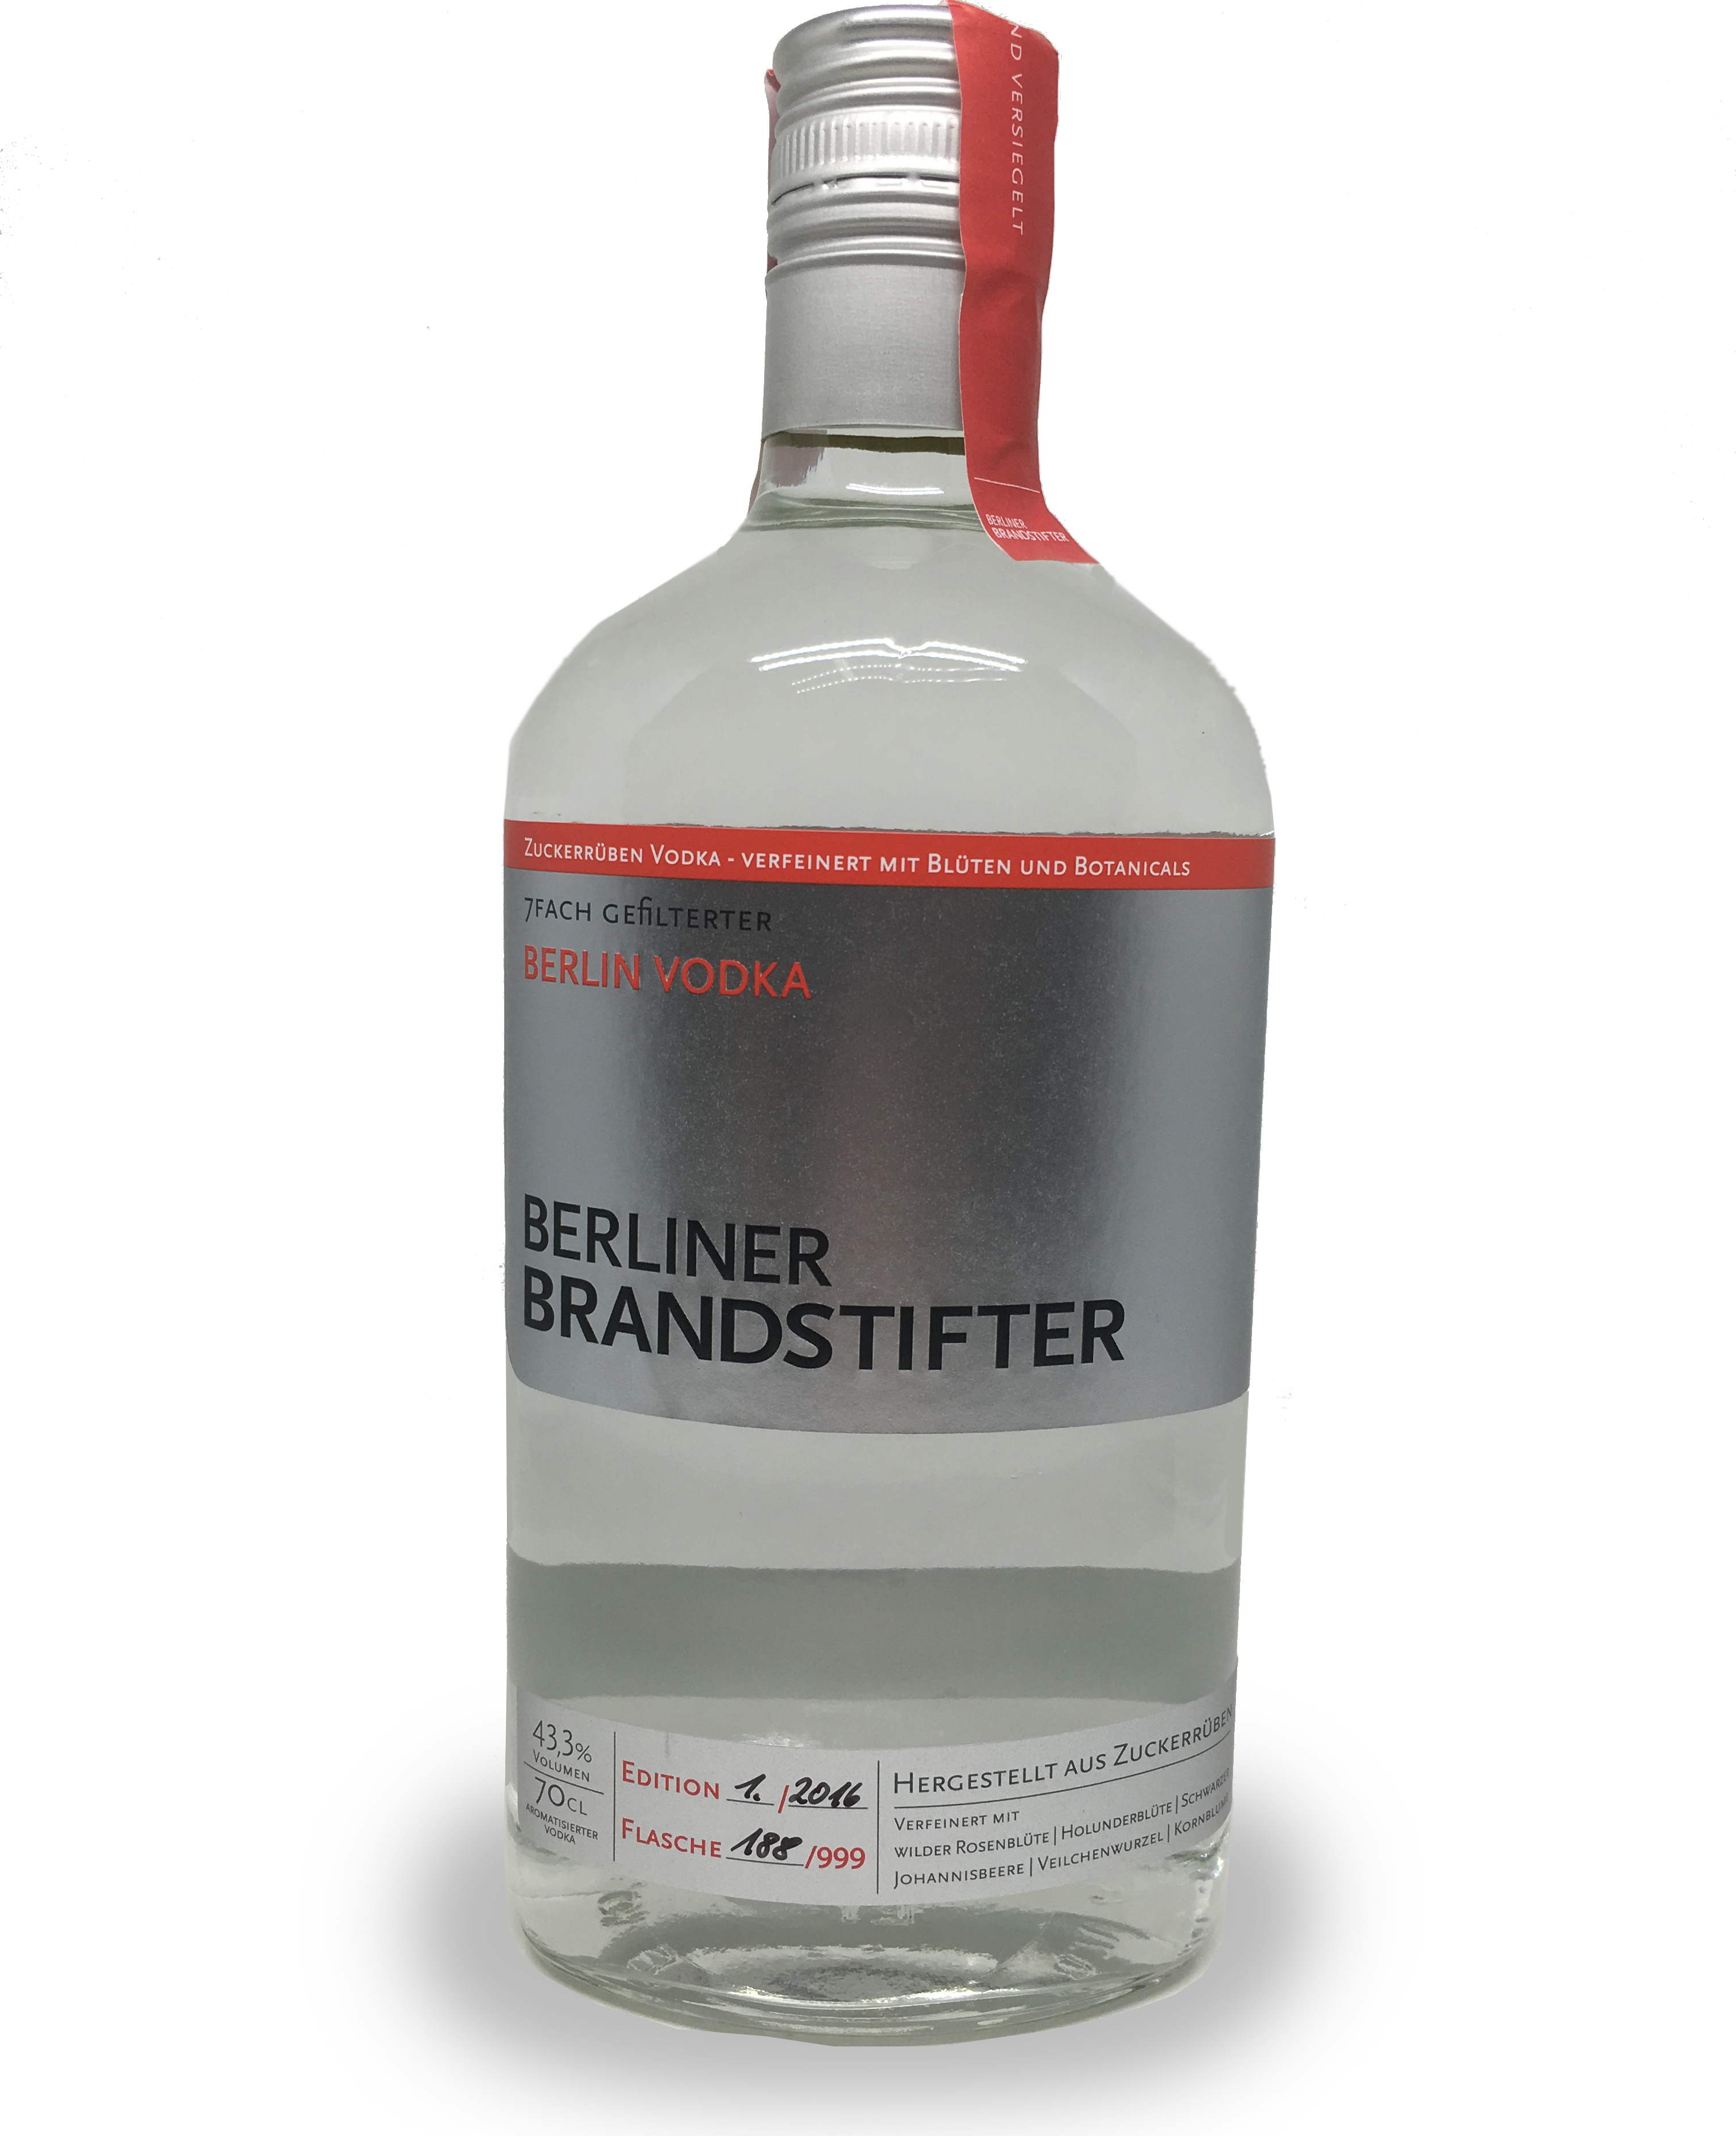 Berliner Brandstifter Berlin Vodka - 7 fach gefiltert - 0,7l 43,3%vol. *versandkostenfrei*